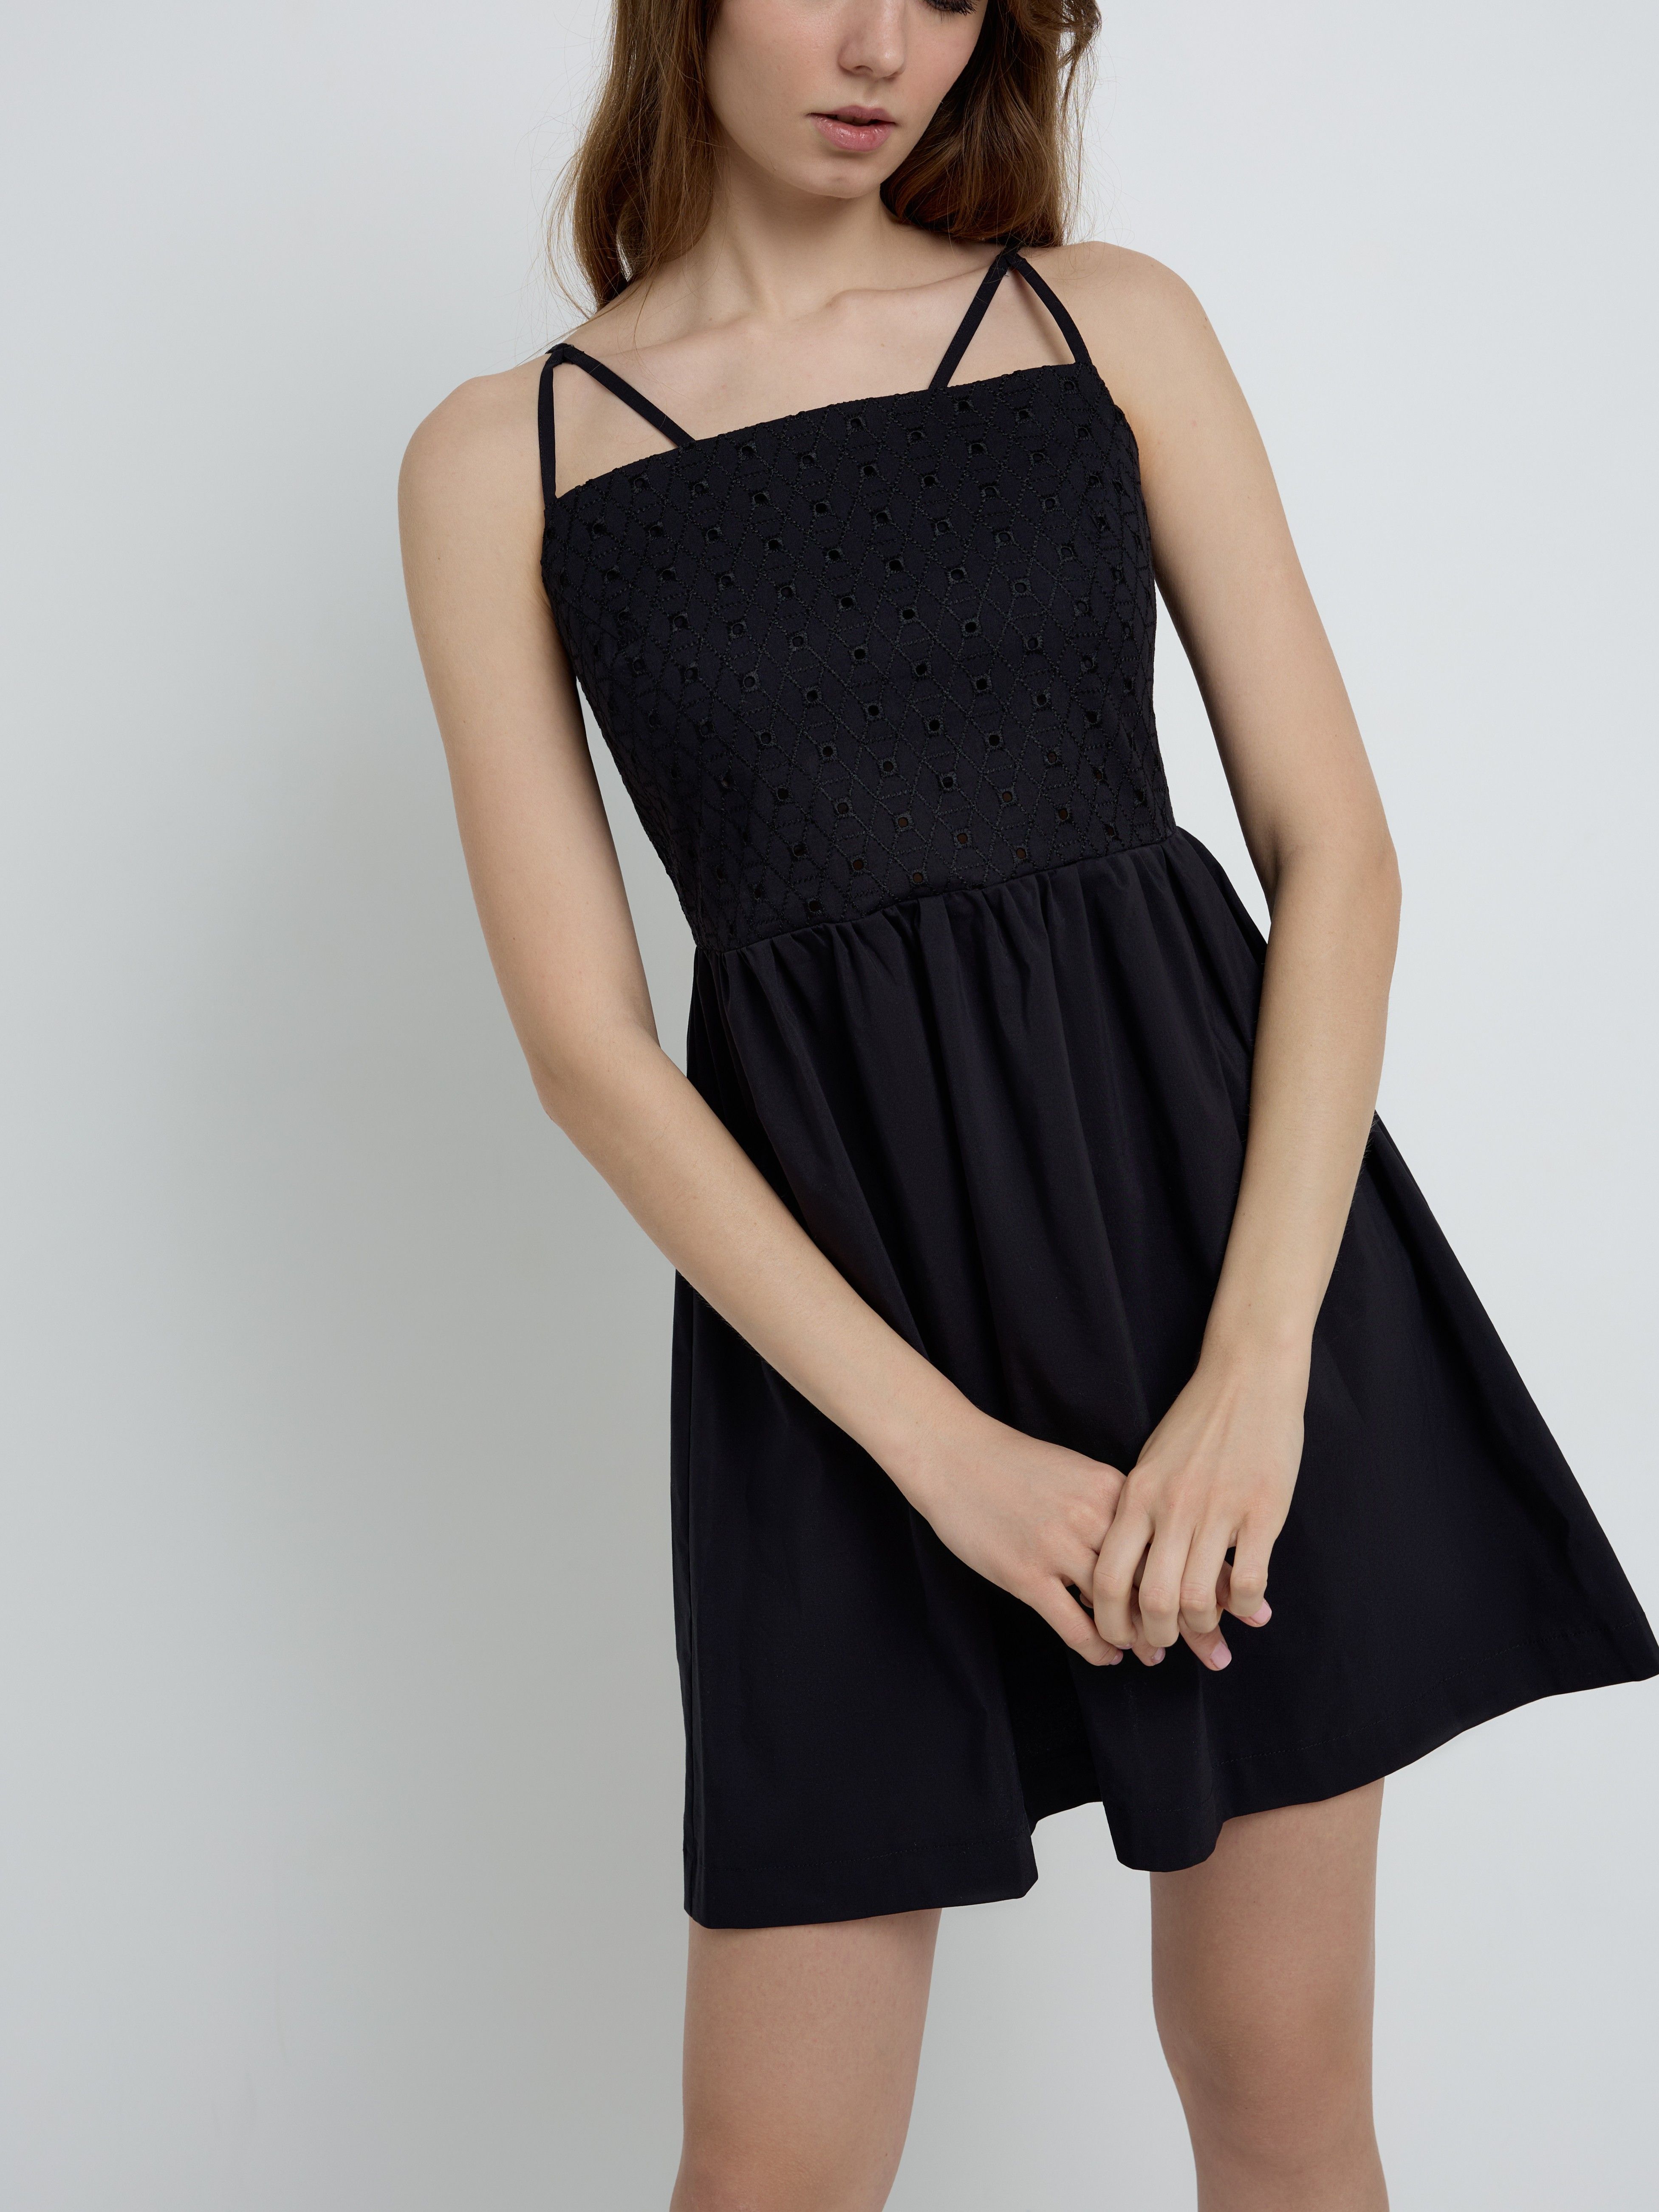 Легкое платье на тонких бретелях с вышивкой ришелье LPL 2339 Conte ⭐️, цвет black, размер 170-84-90/xs